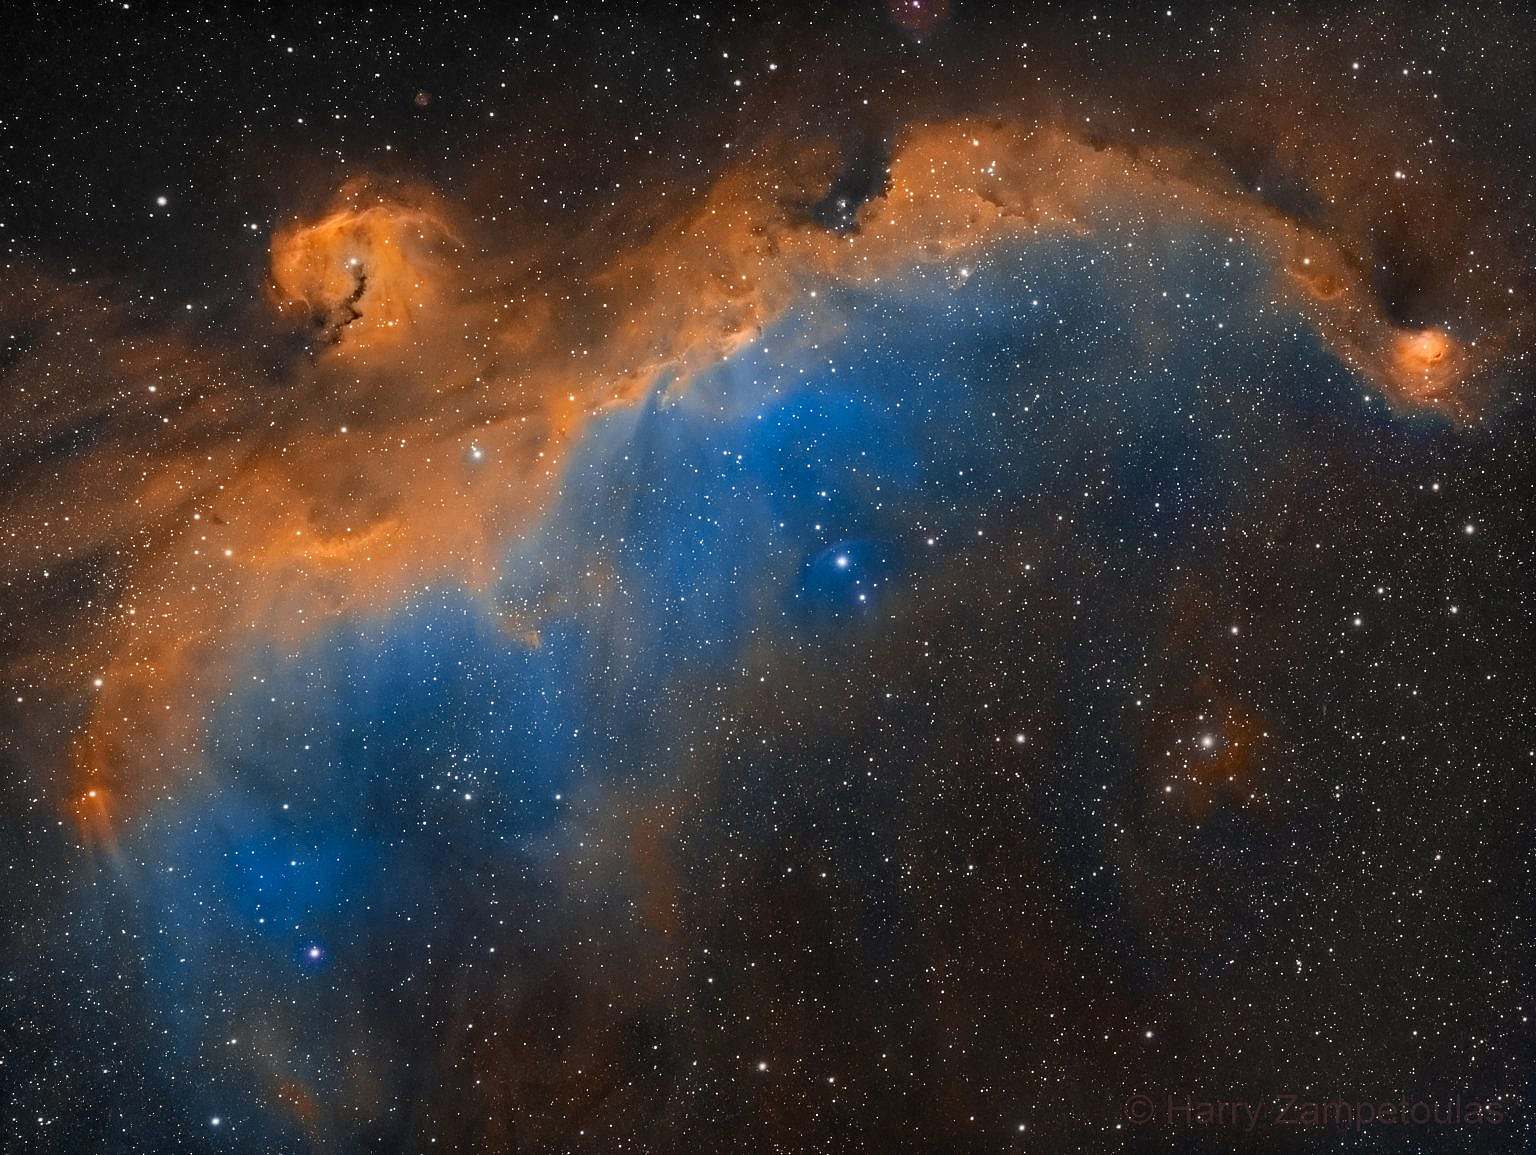 seagull-nebula-in-sho-1536x1155 Seagull Nebula In SHO - Αστροφωτογραφία - Ρόδος, Ελλάδα 